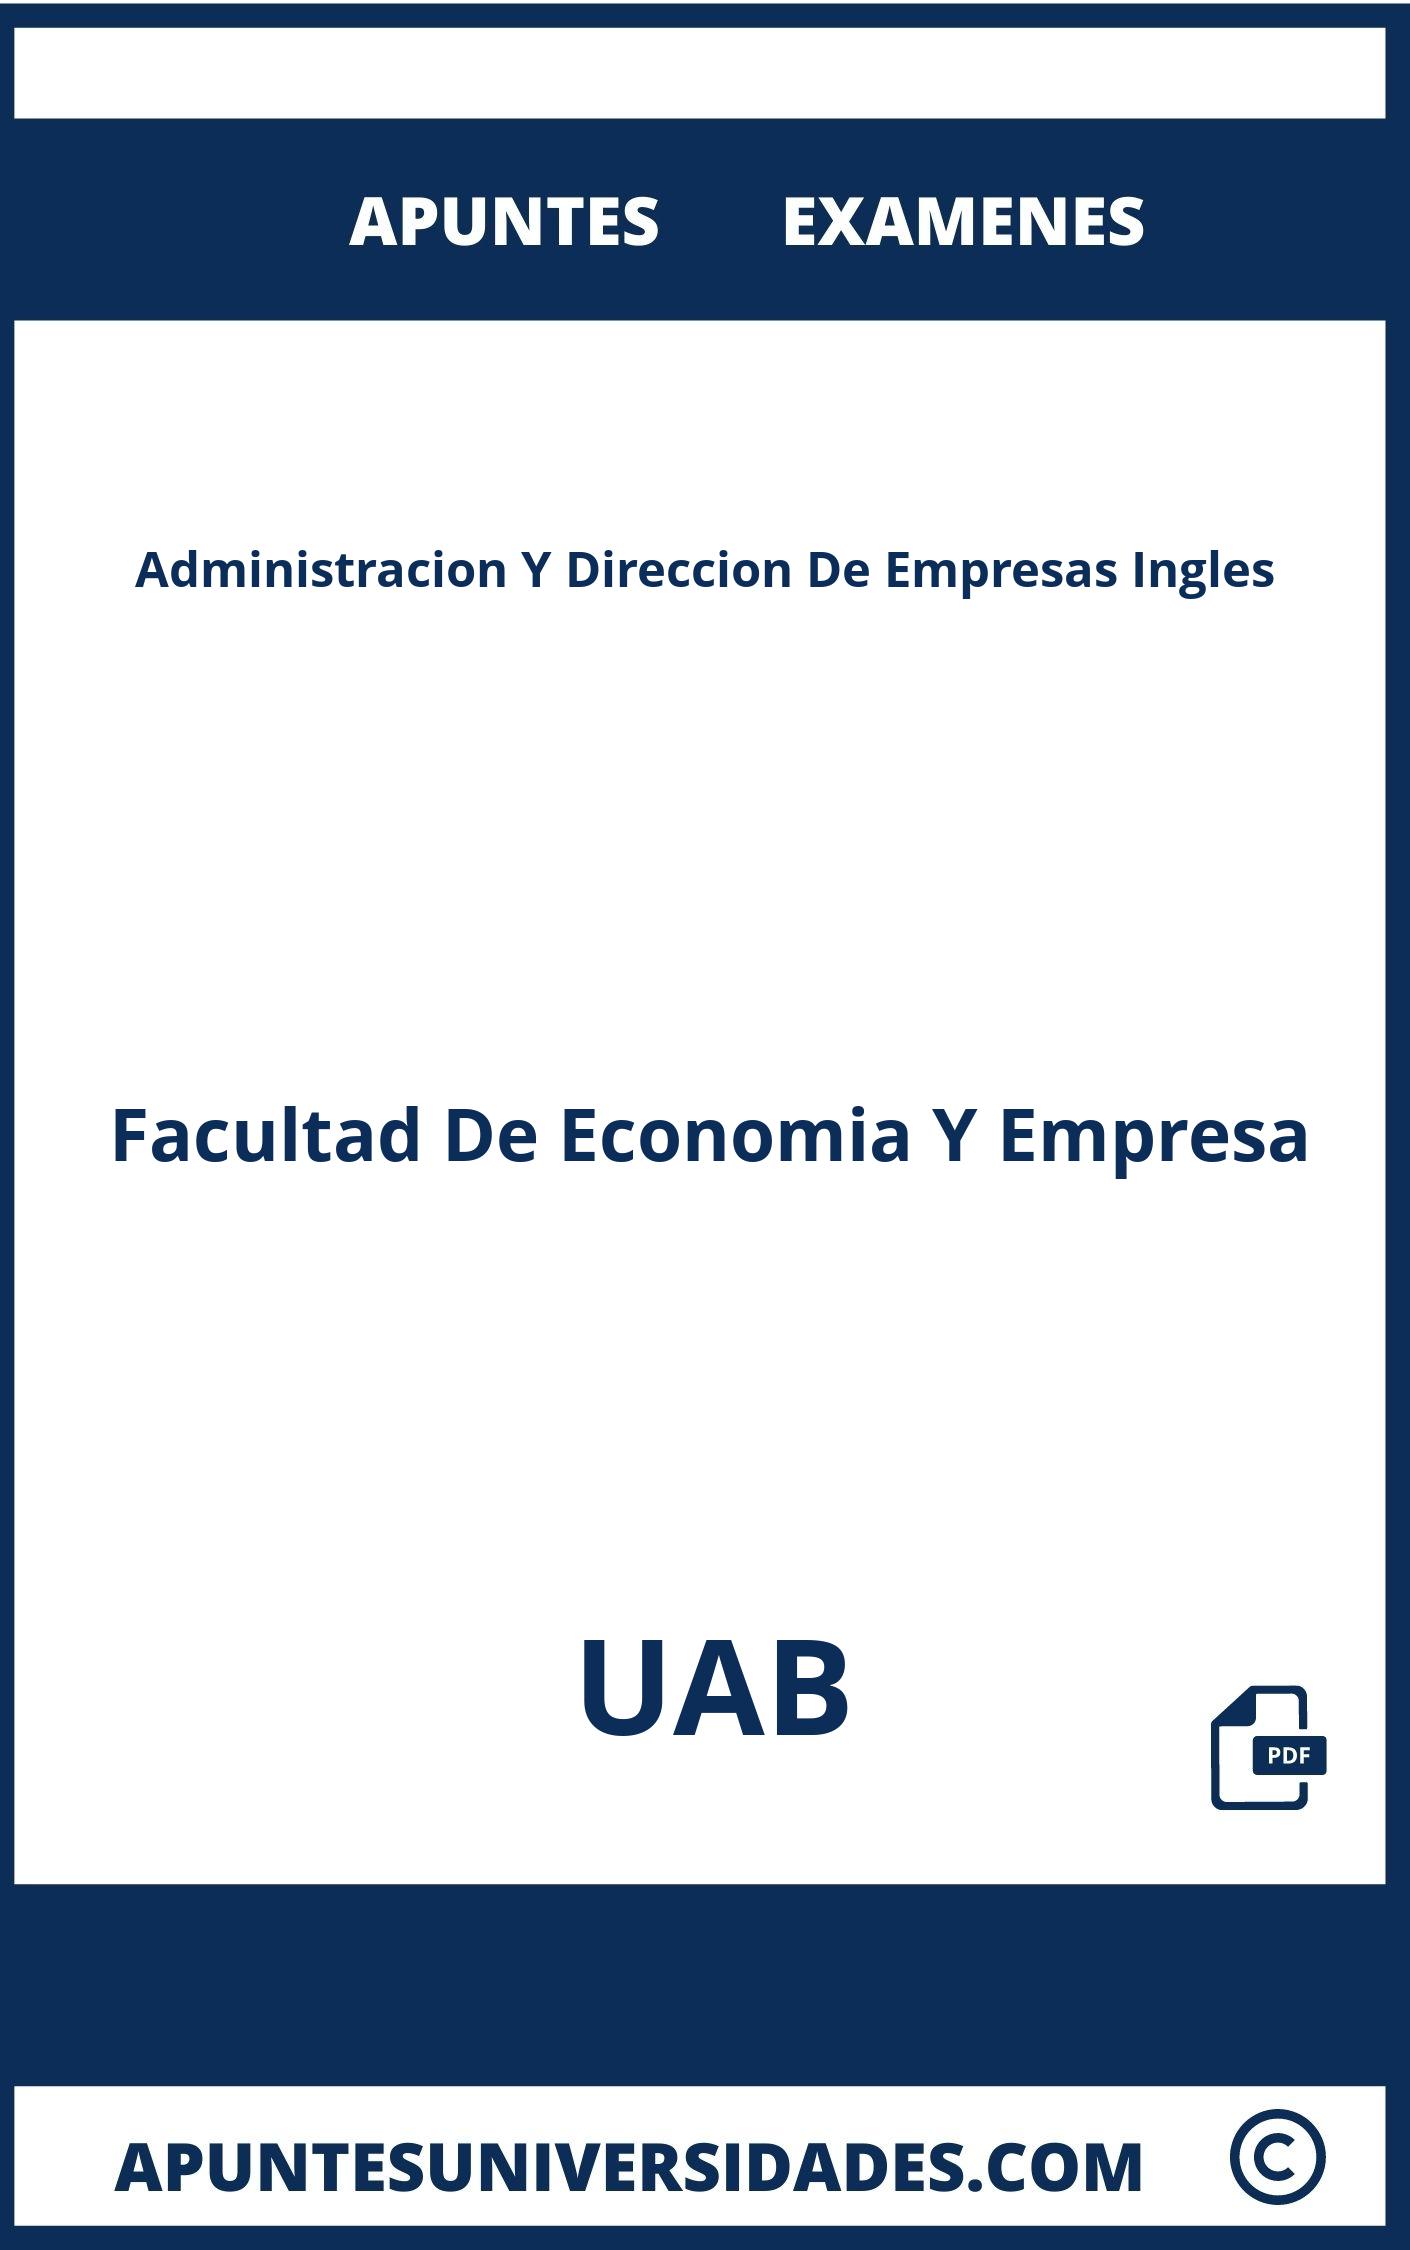 Apuntes y Examenes de Administracion Y Direccion De Empresas Ingles UAB